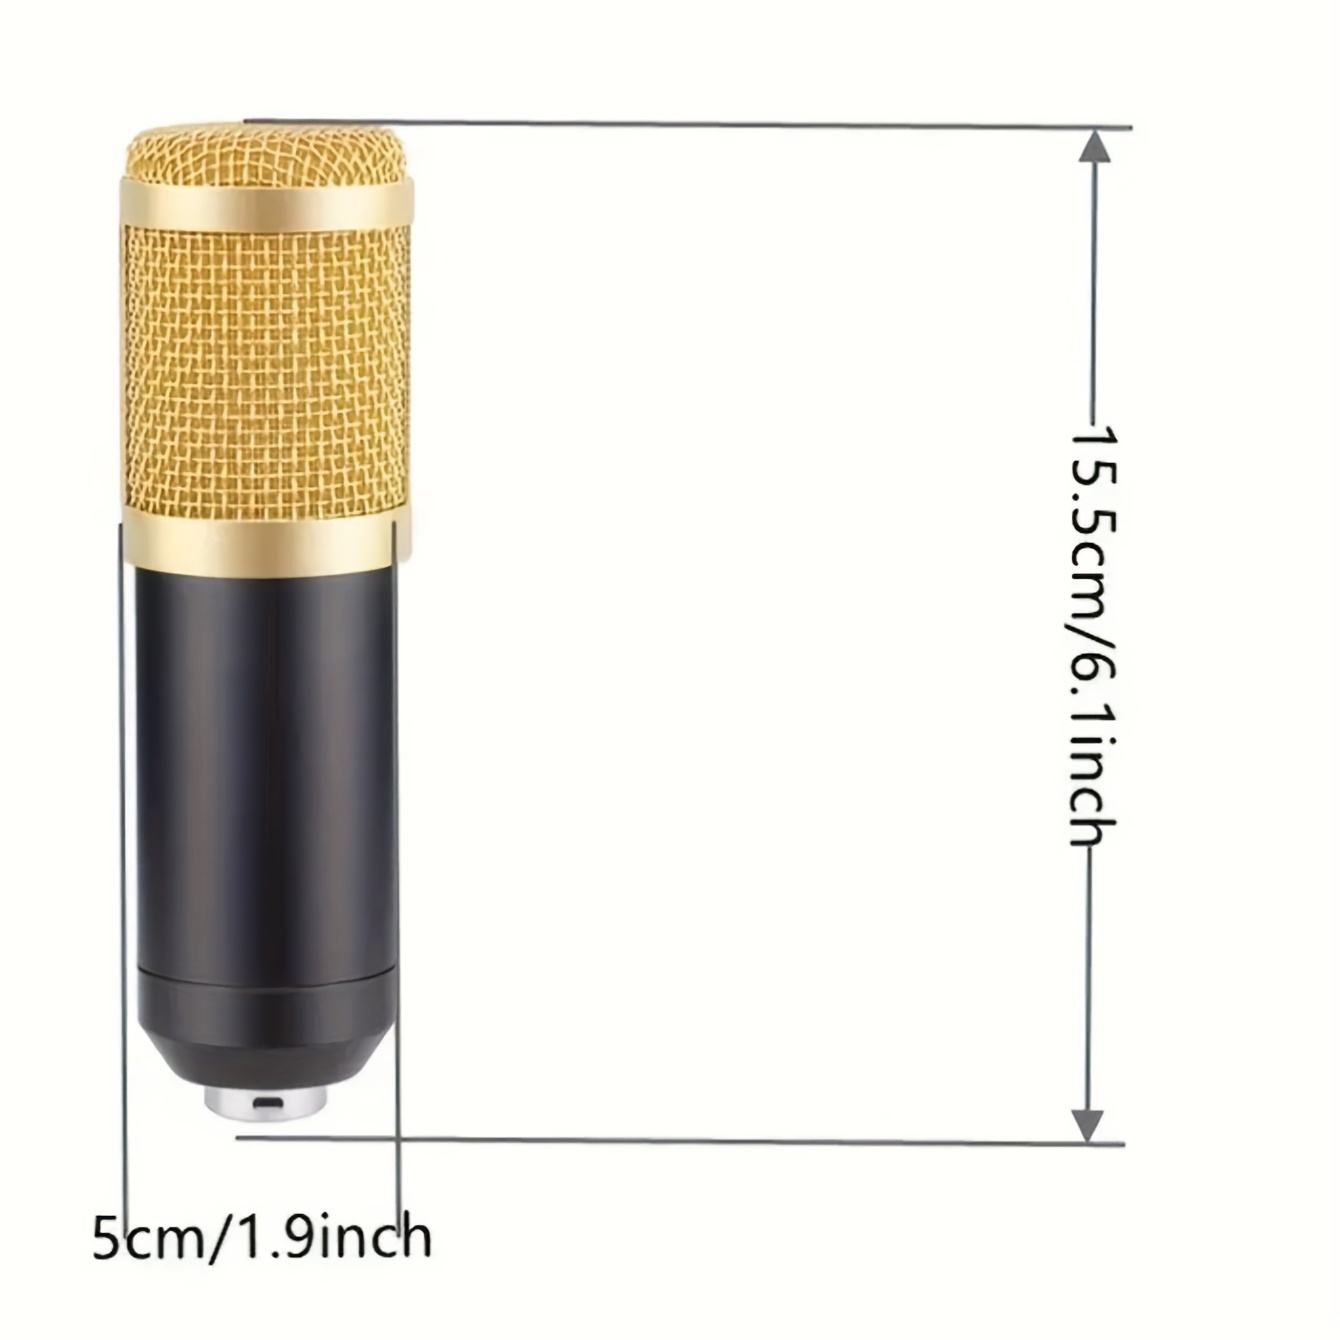 Ensemble Microphone À Condensateur Bm 800 Support Microphone